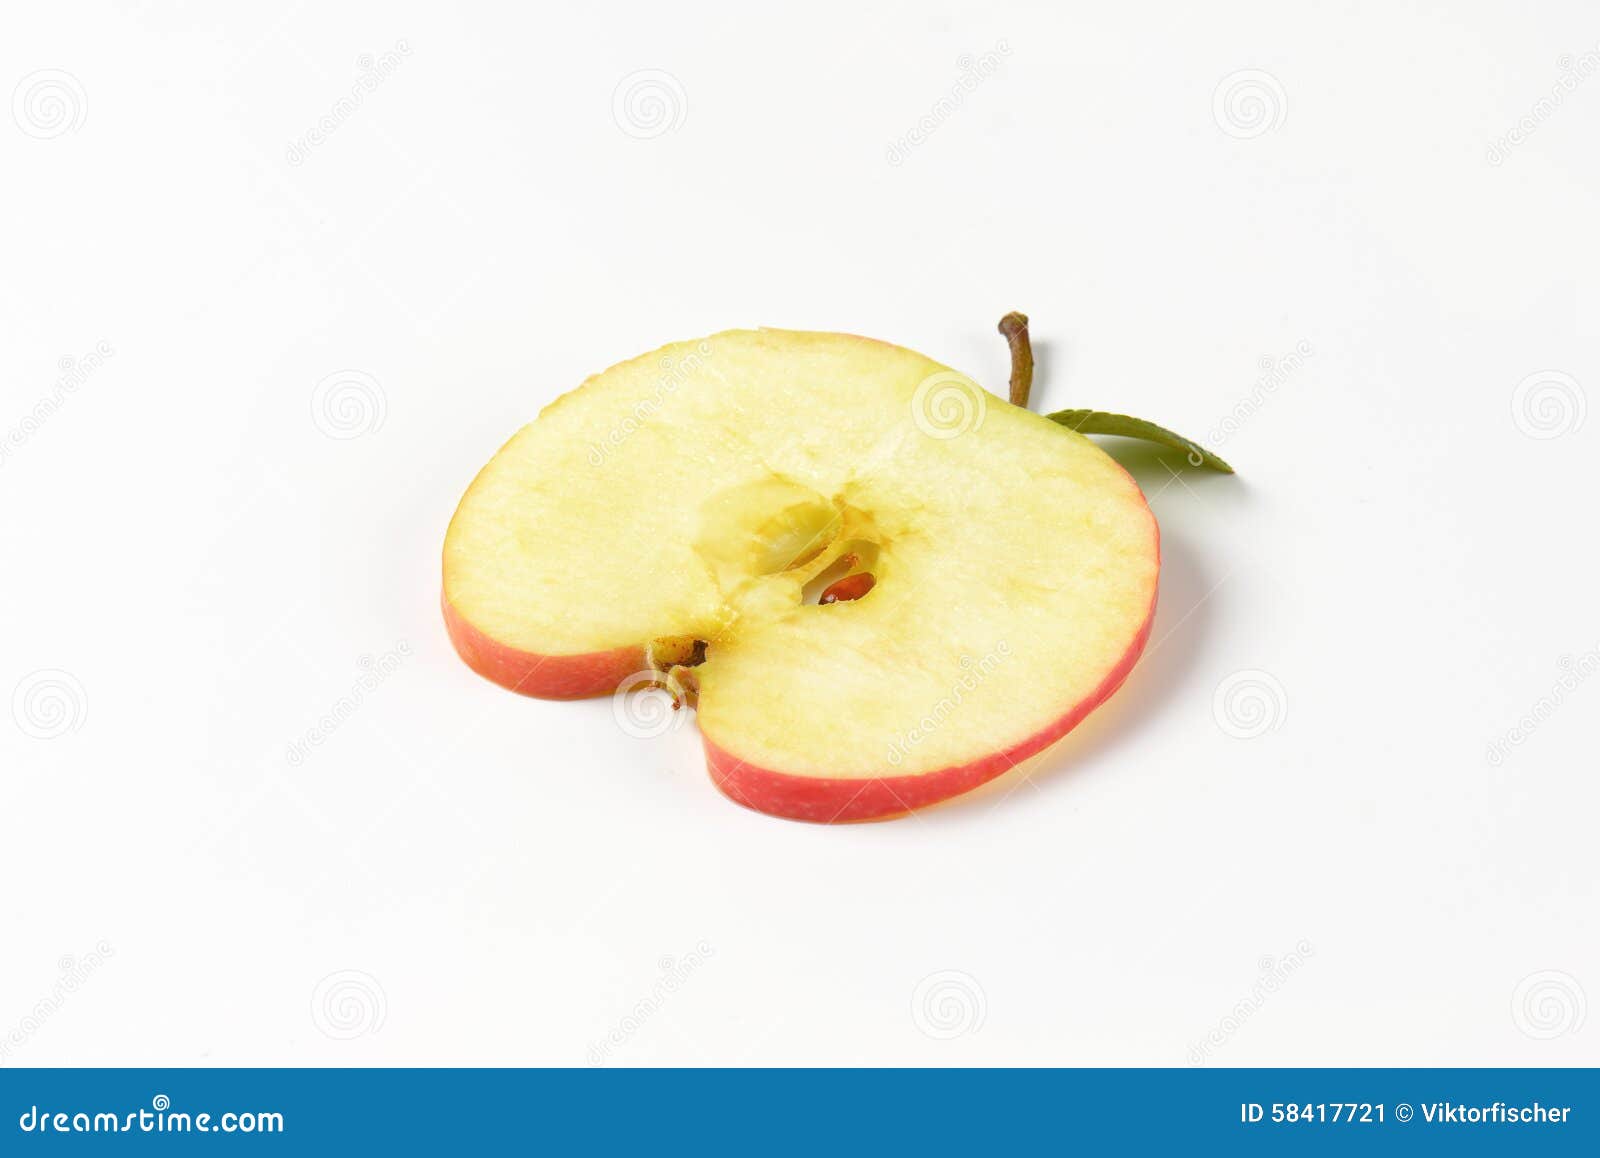 Или кусочек яблока или орешек. Долька яблока. Яблоко тонкая долька. Сочное яблоко дольки на прозрачном фоне. Долька яблока на белом фоне.